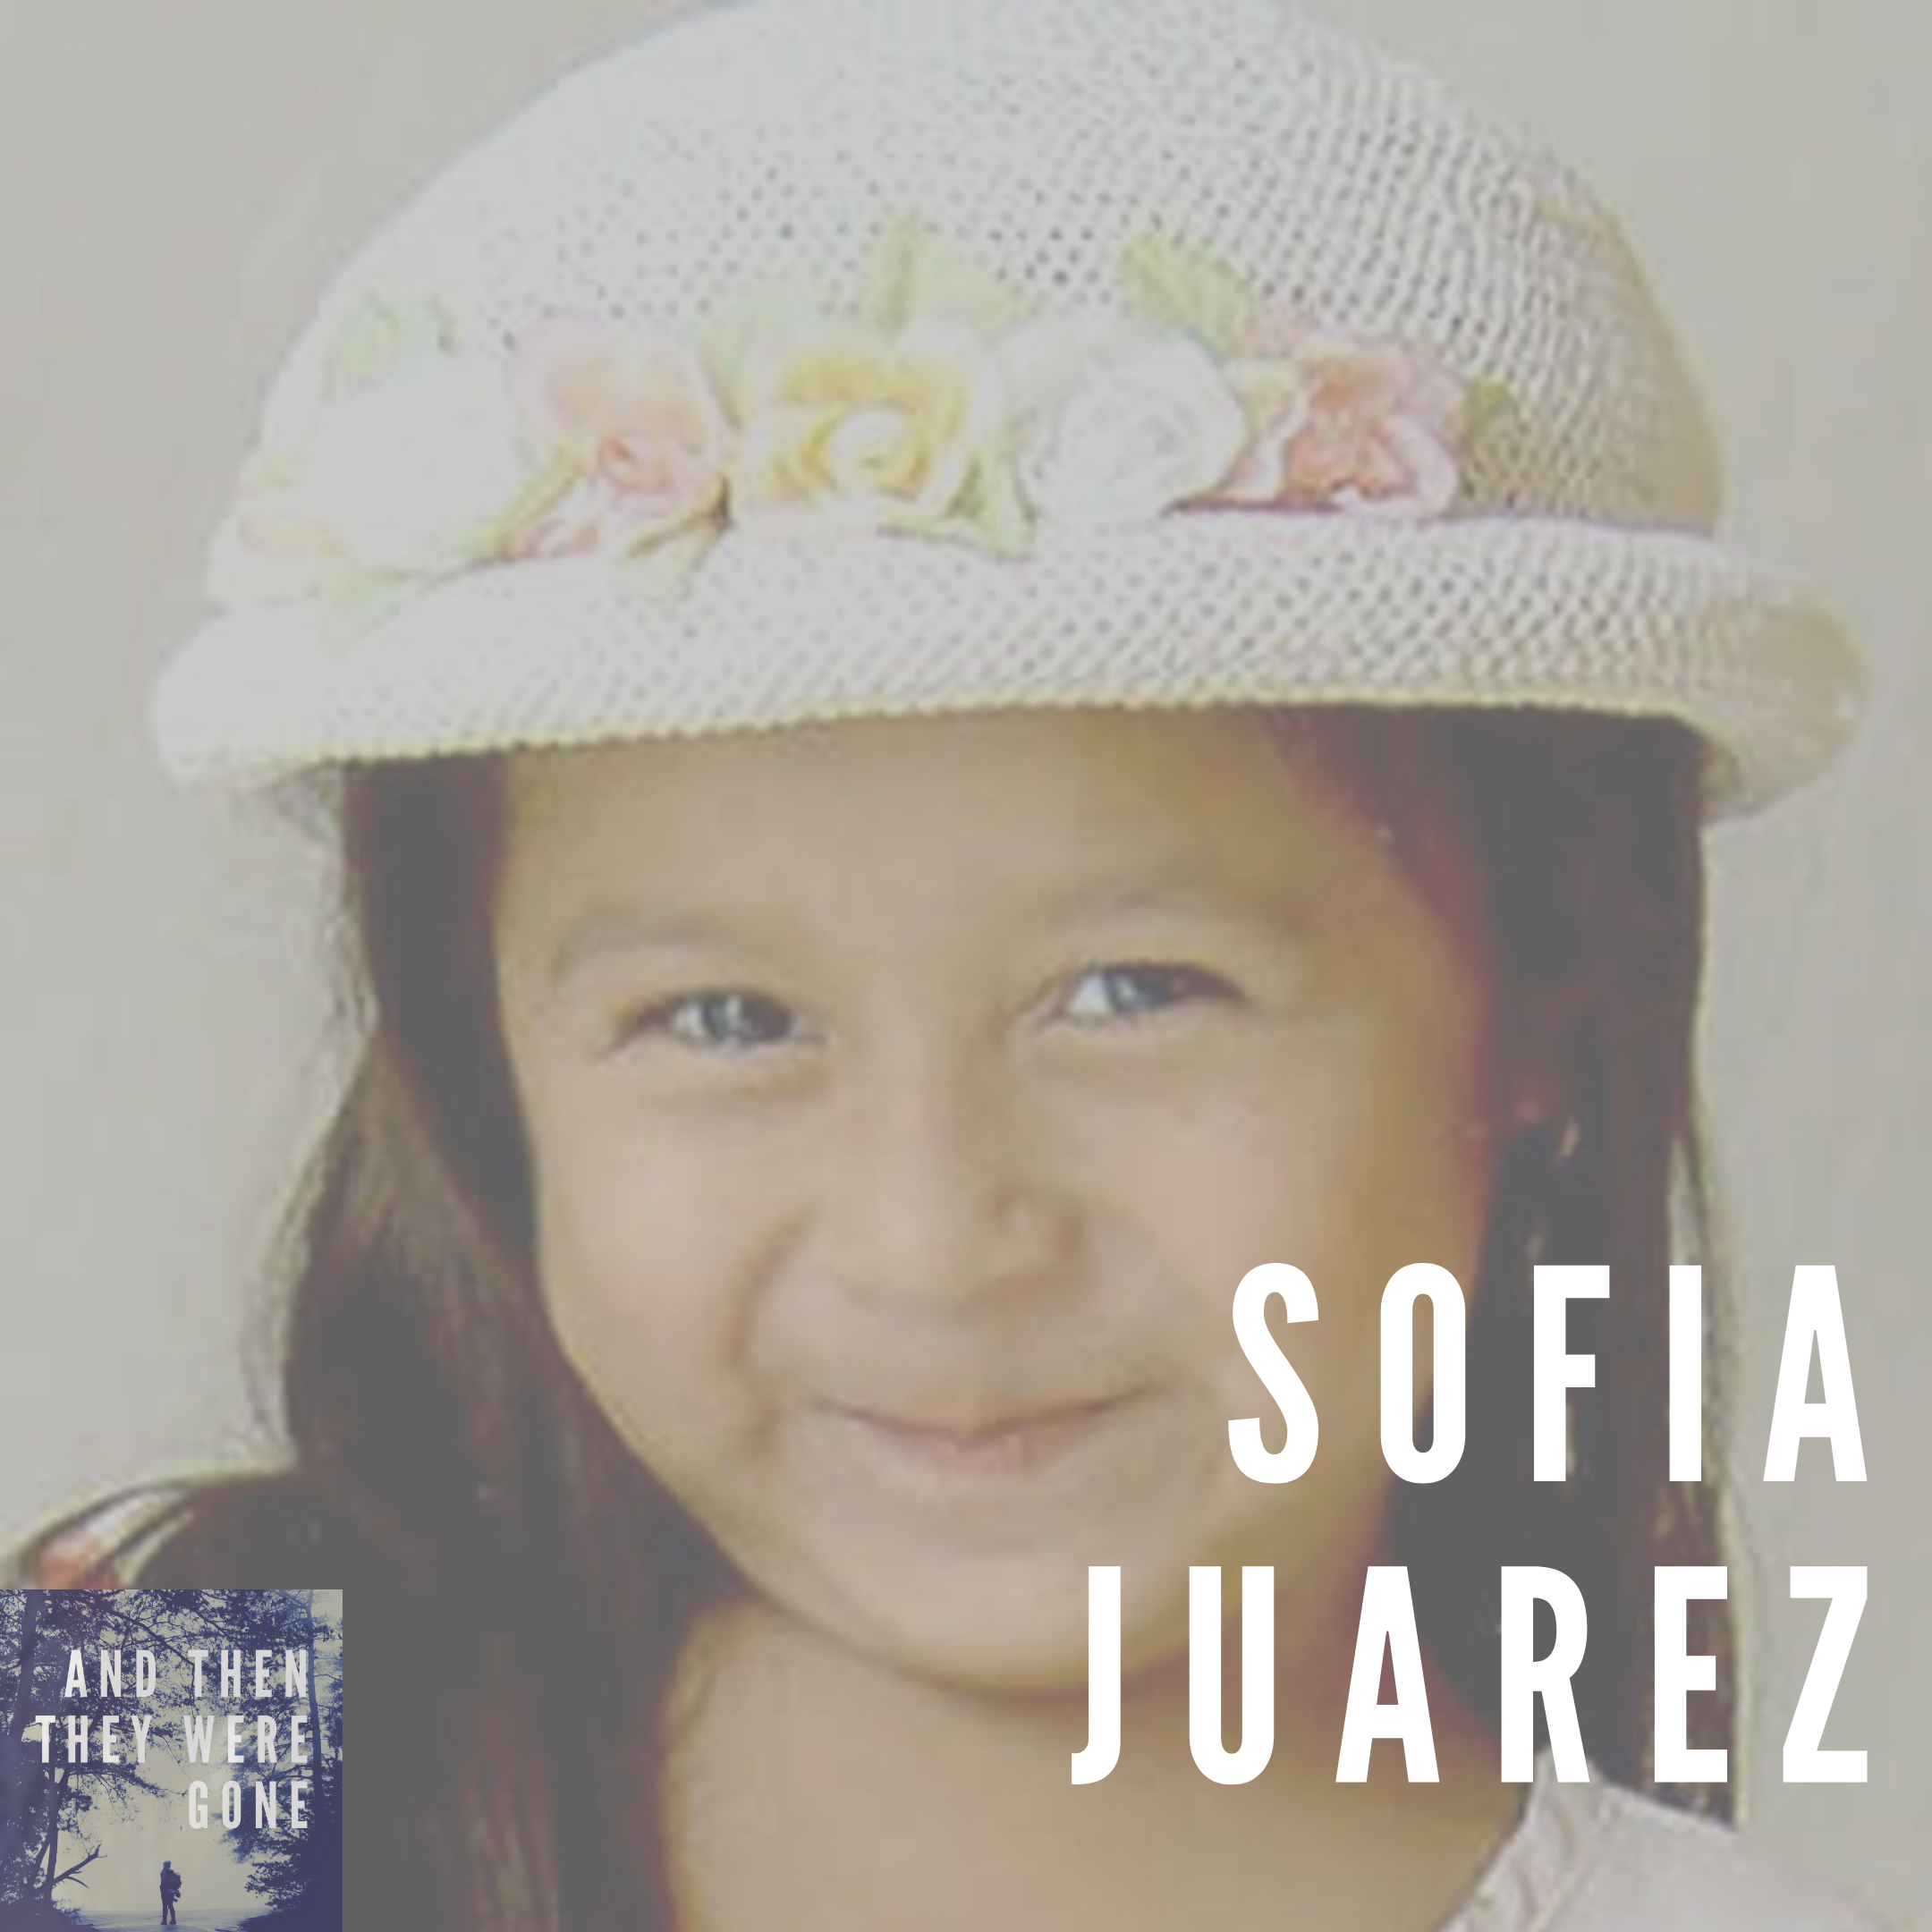 Sofia Juarez - Missing Since February 4, 2003